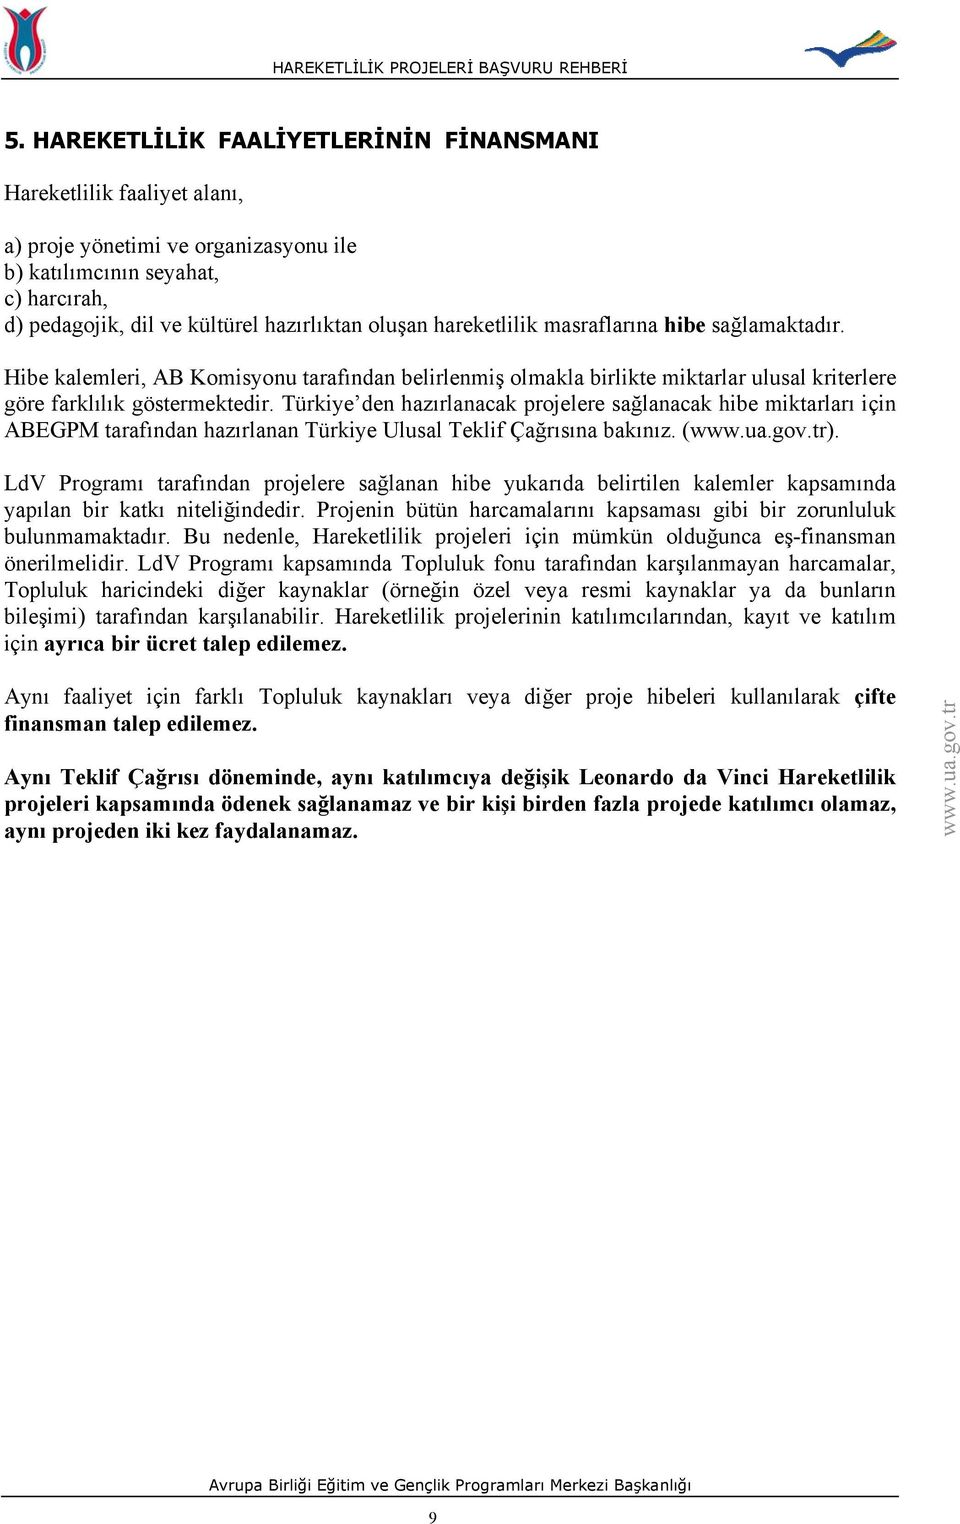 Türkiye den hazırlanacak projelere sağlanacak hibe miktarları için ABEGPM tarafından hazırlanan Türkiye Ulusal Teklif Çağrısına bakınız. ().